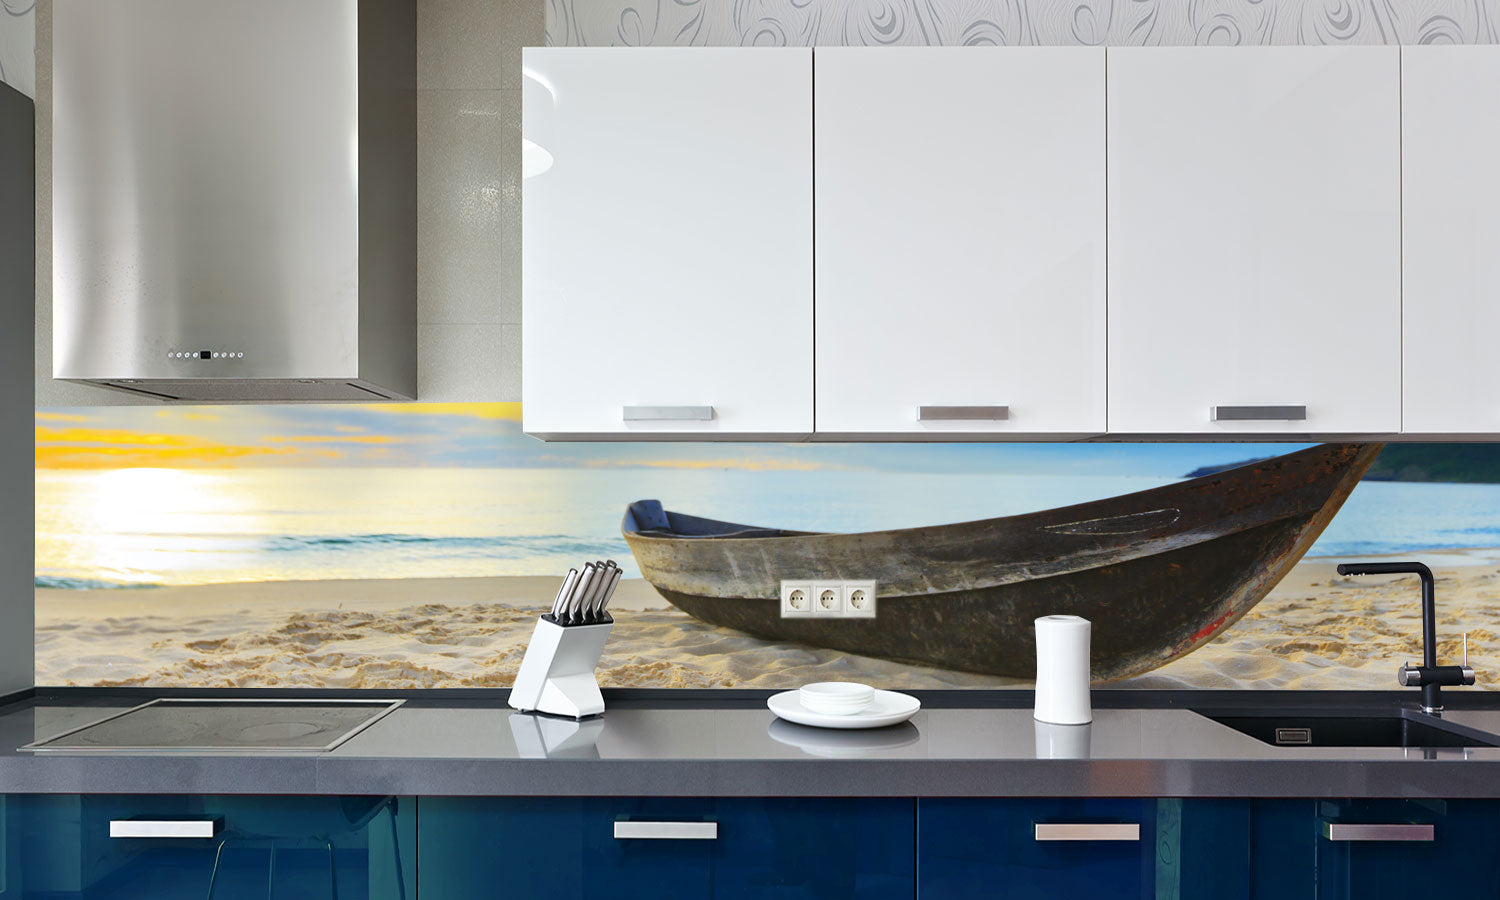 Kuhinjski paneli Beach panorama - Stekleni / PVC plošče / Pleksi steklo - s tiskom za kuhinjo, Stenske obloge PKU0199 - Life-decor.si